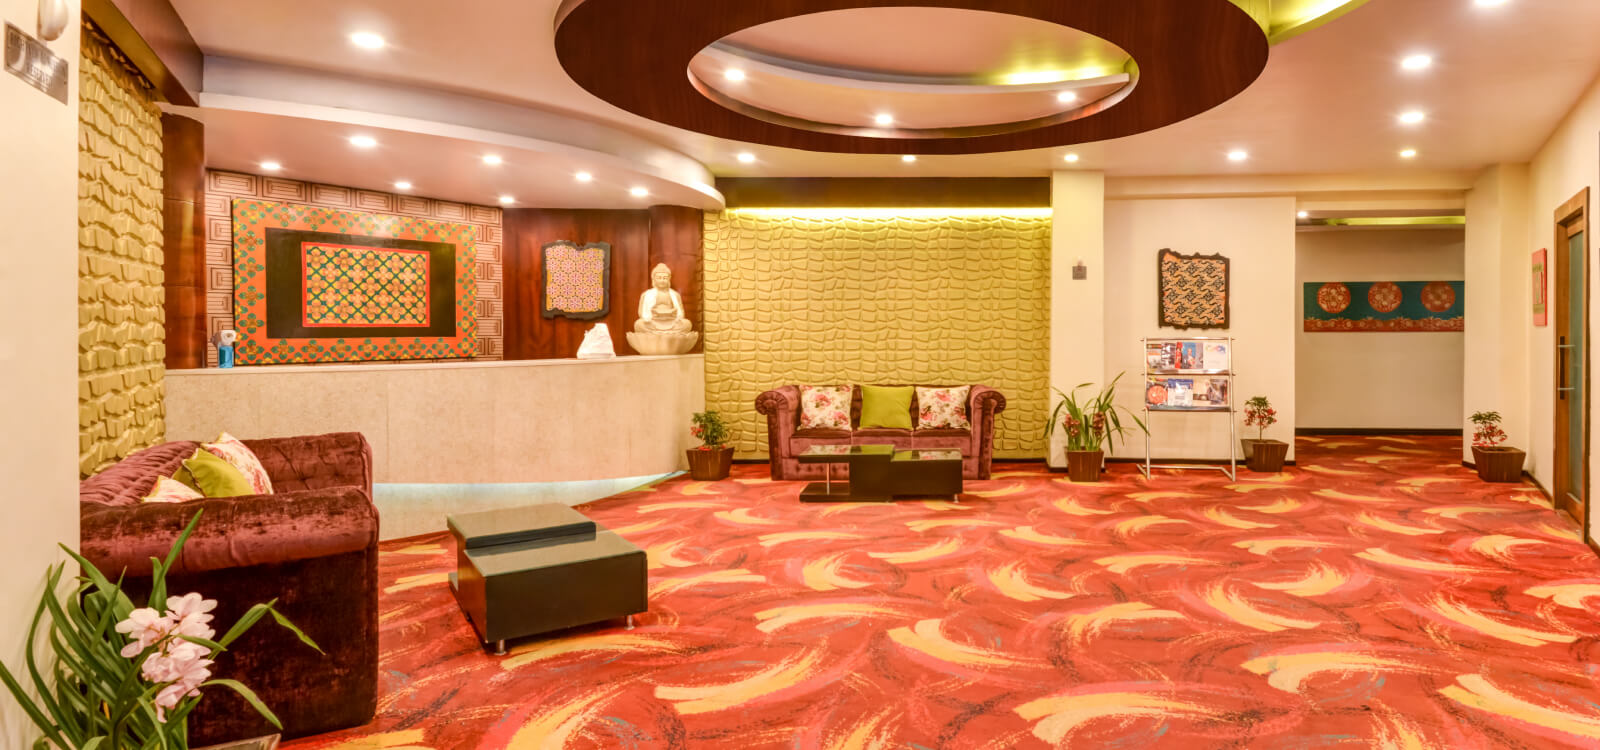 Darjeeling - Summit Hotels & Resorts in Darjeeling | Summit Hotels ...